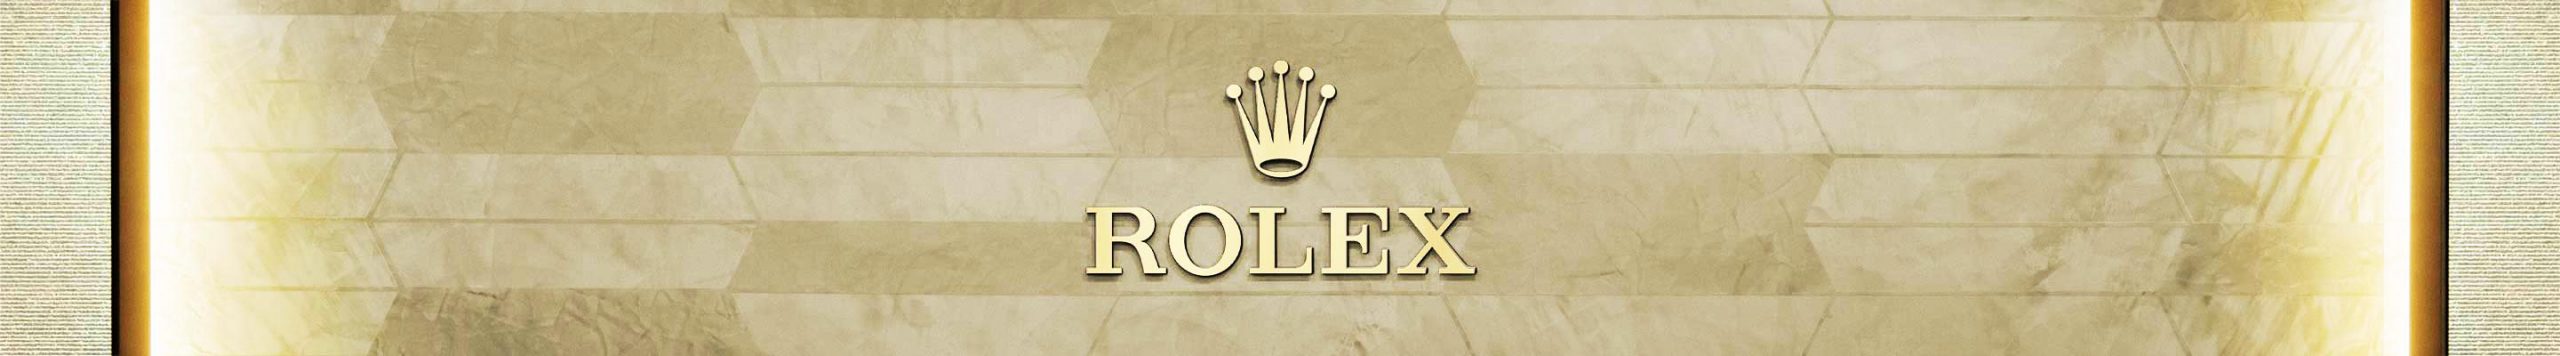 Rolex Our Boutiques | Rolex Official Retailer - Time Midas